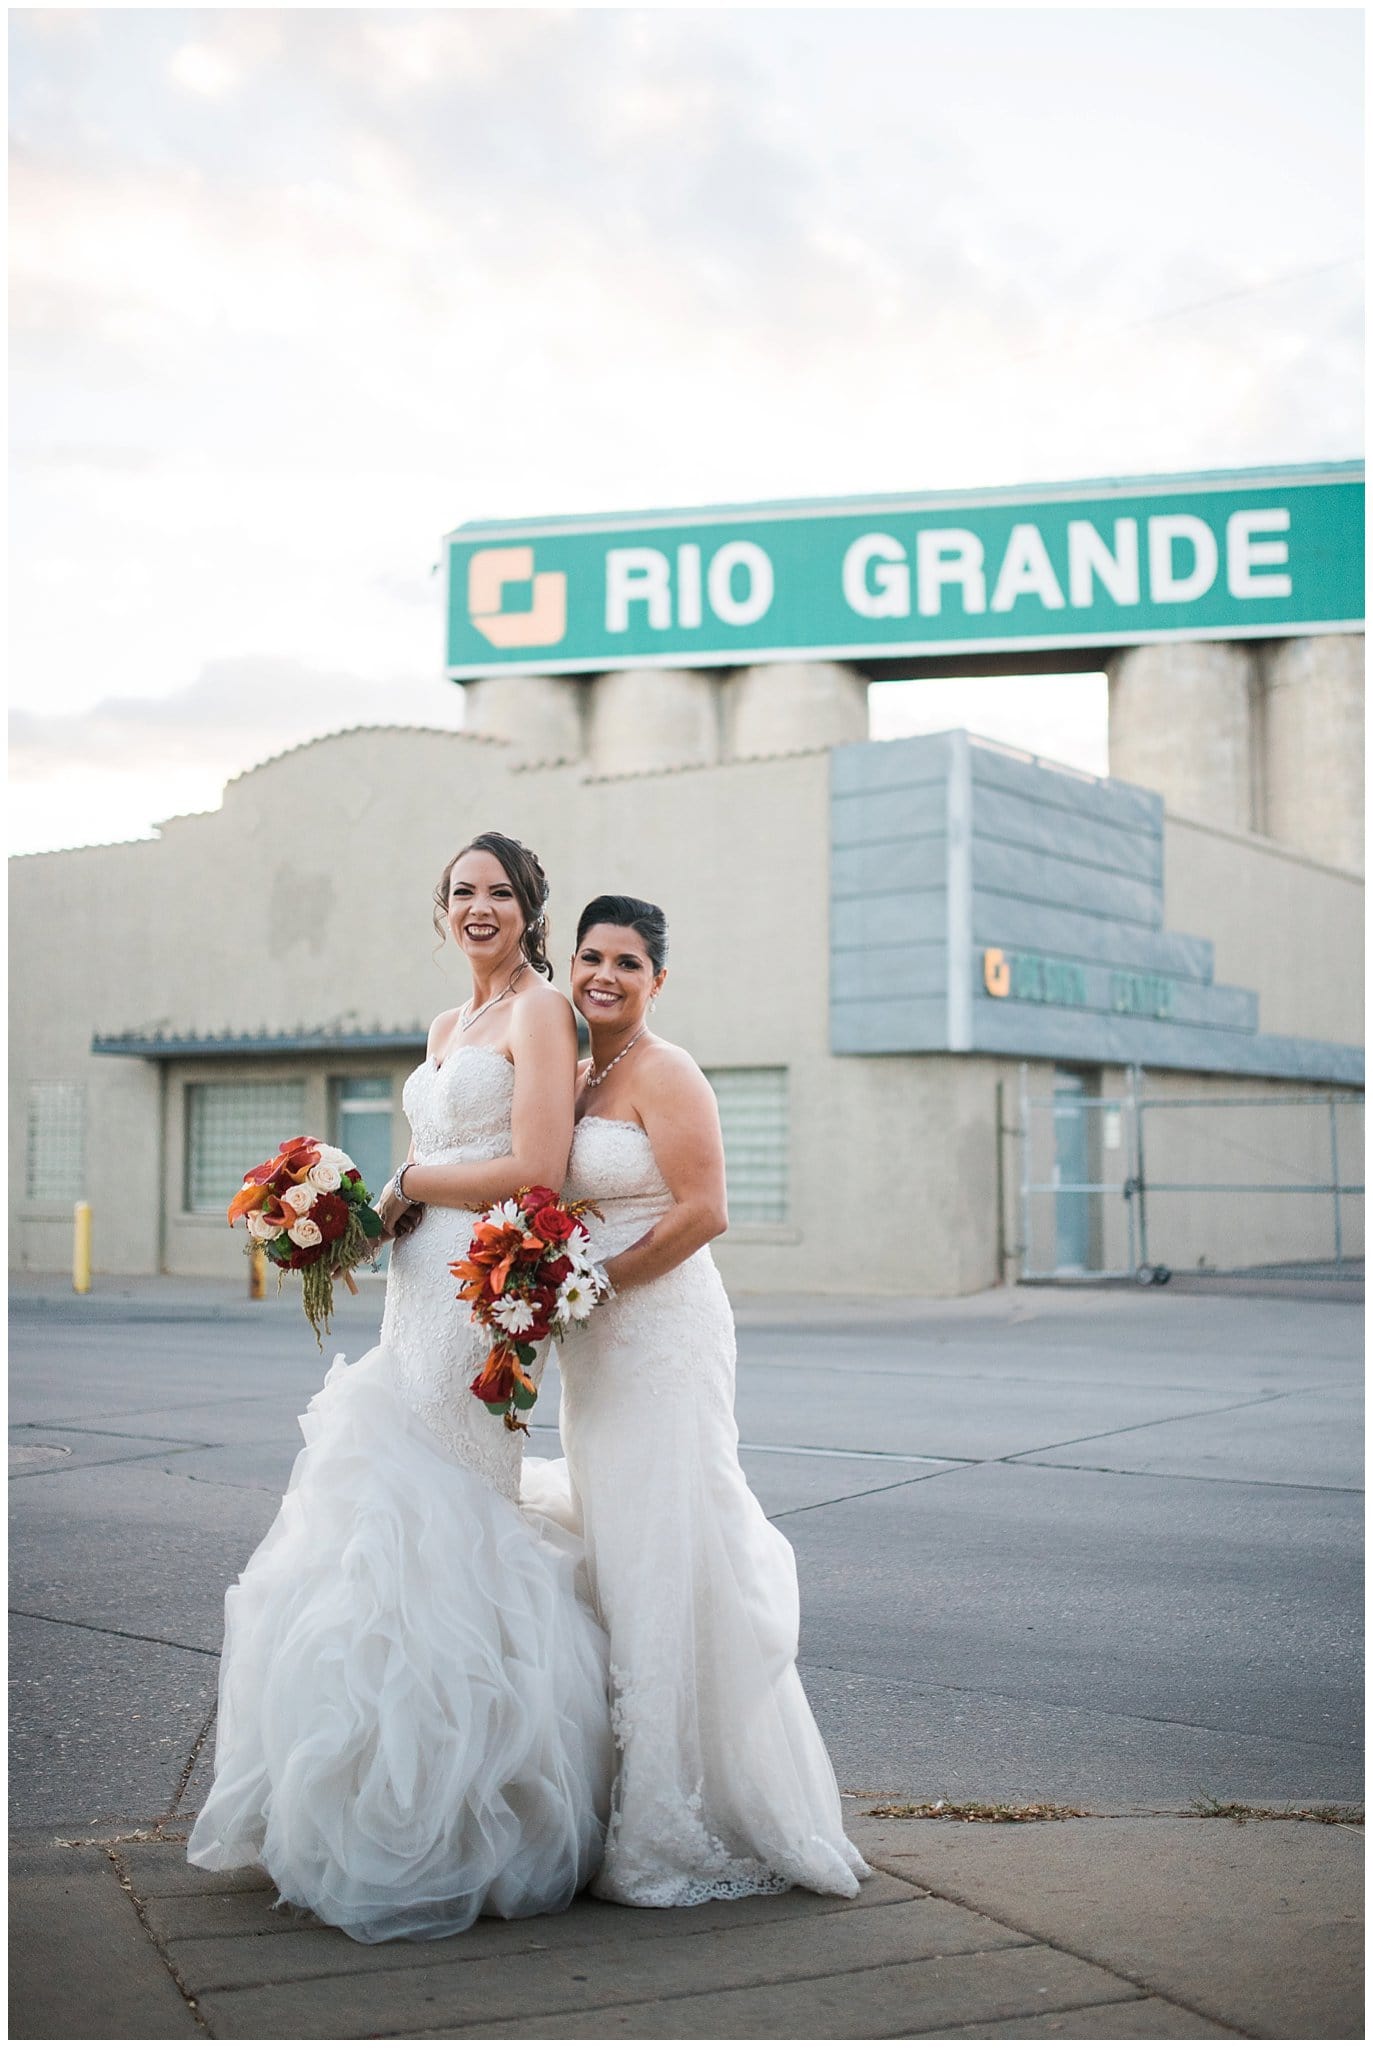 Rio Grande Same-sex wedding photo